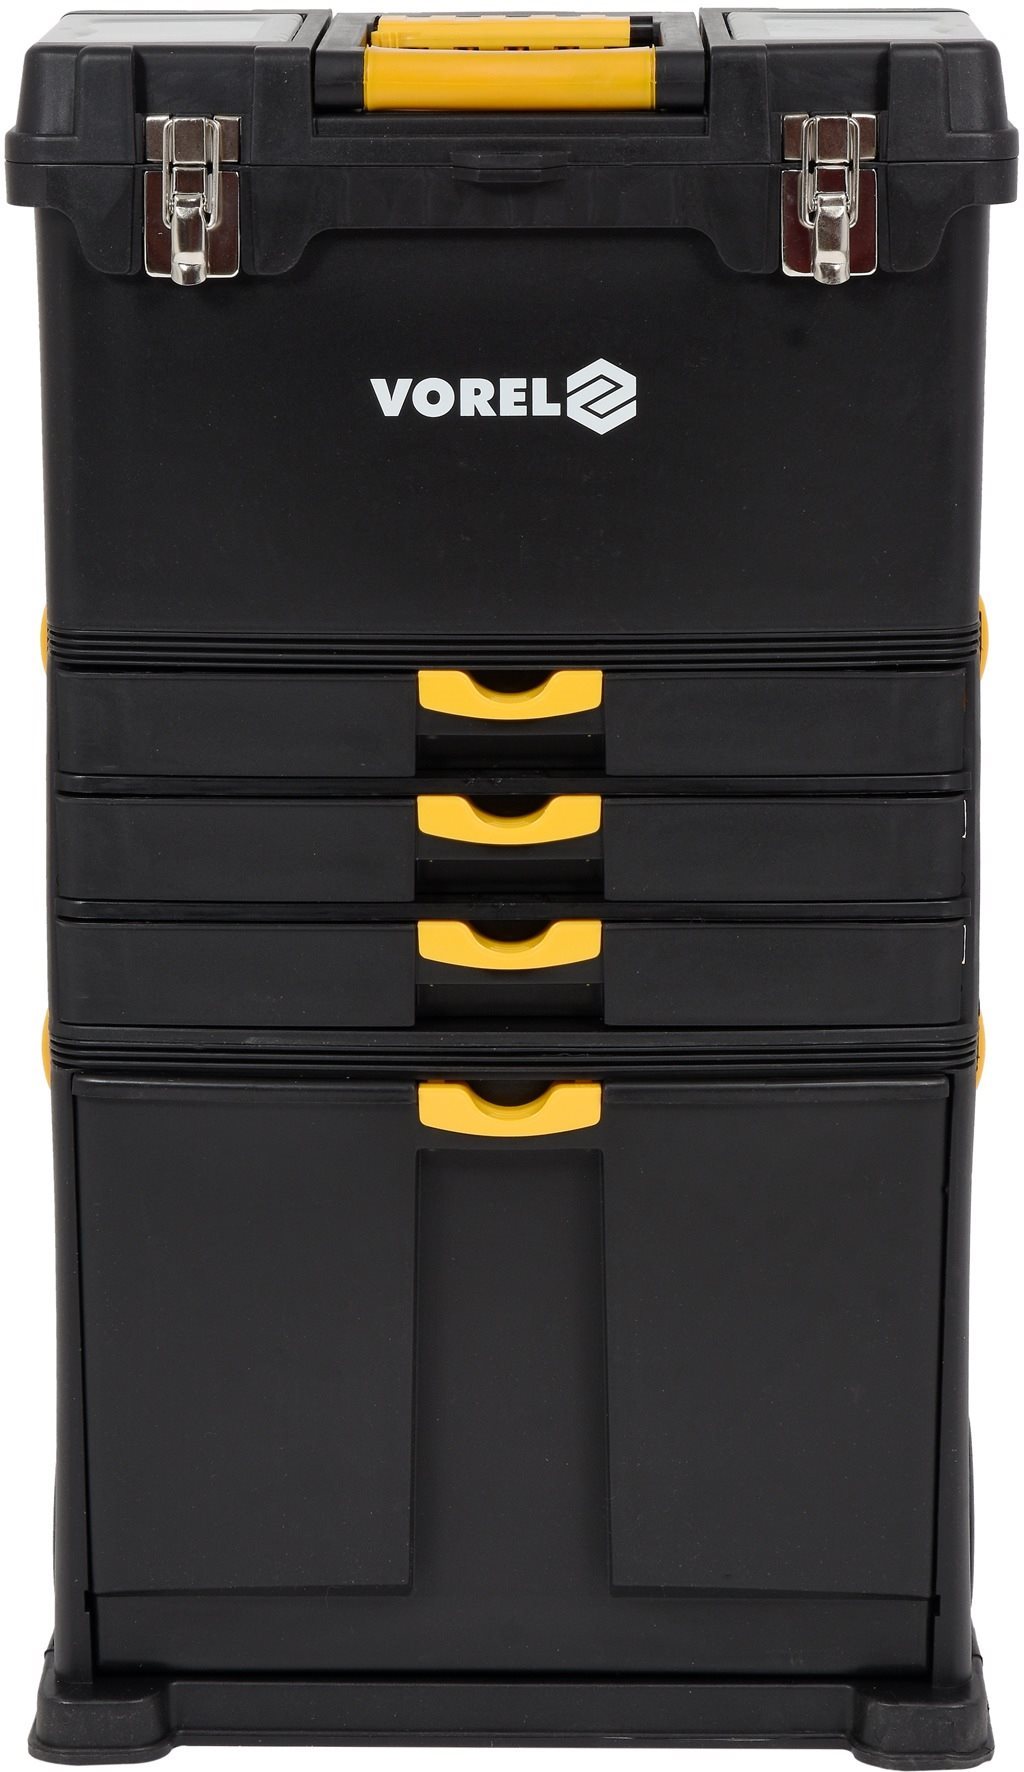 Vorel mobil szerszámos szekrény 3 rész